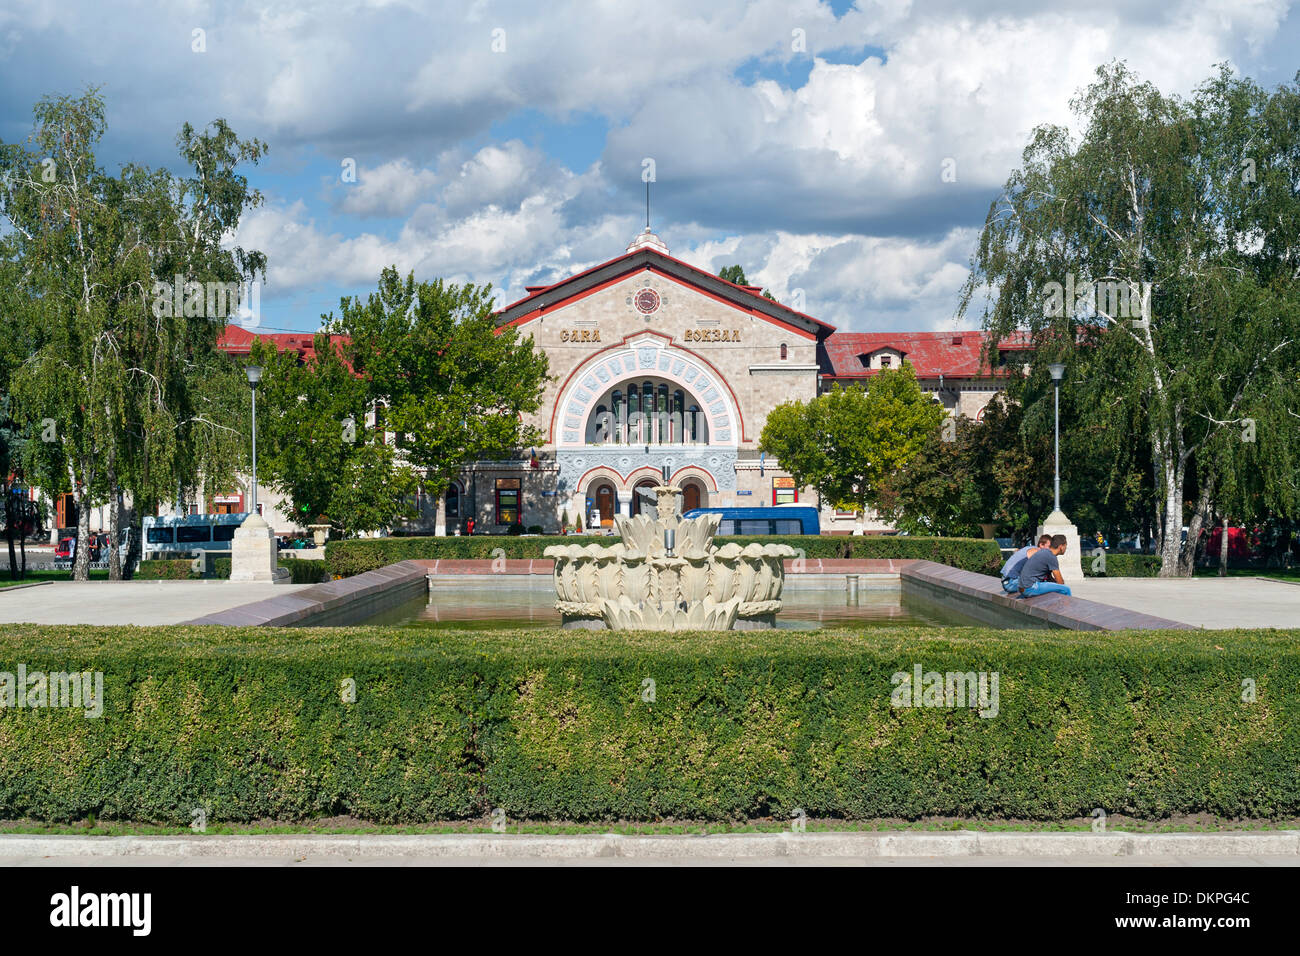 Der Bahnhof in Chisinau, der Hauptstadt der Republik Moldau in Osteuropa. Stockfoto